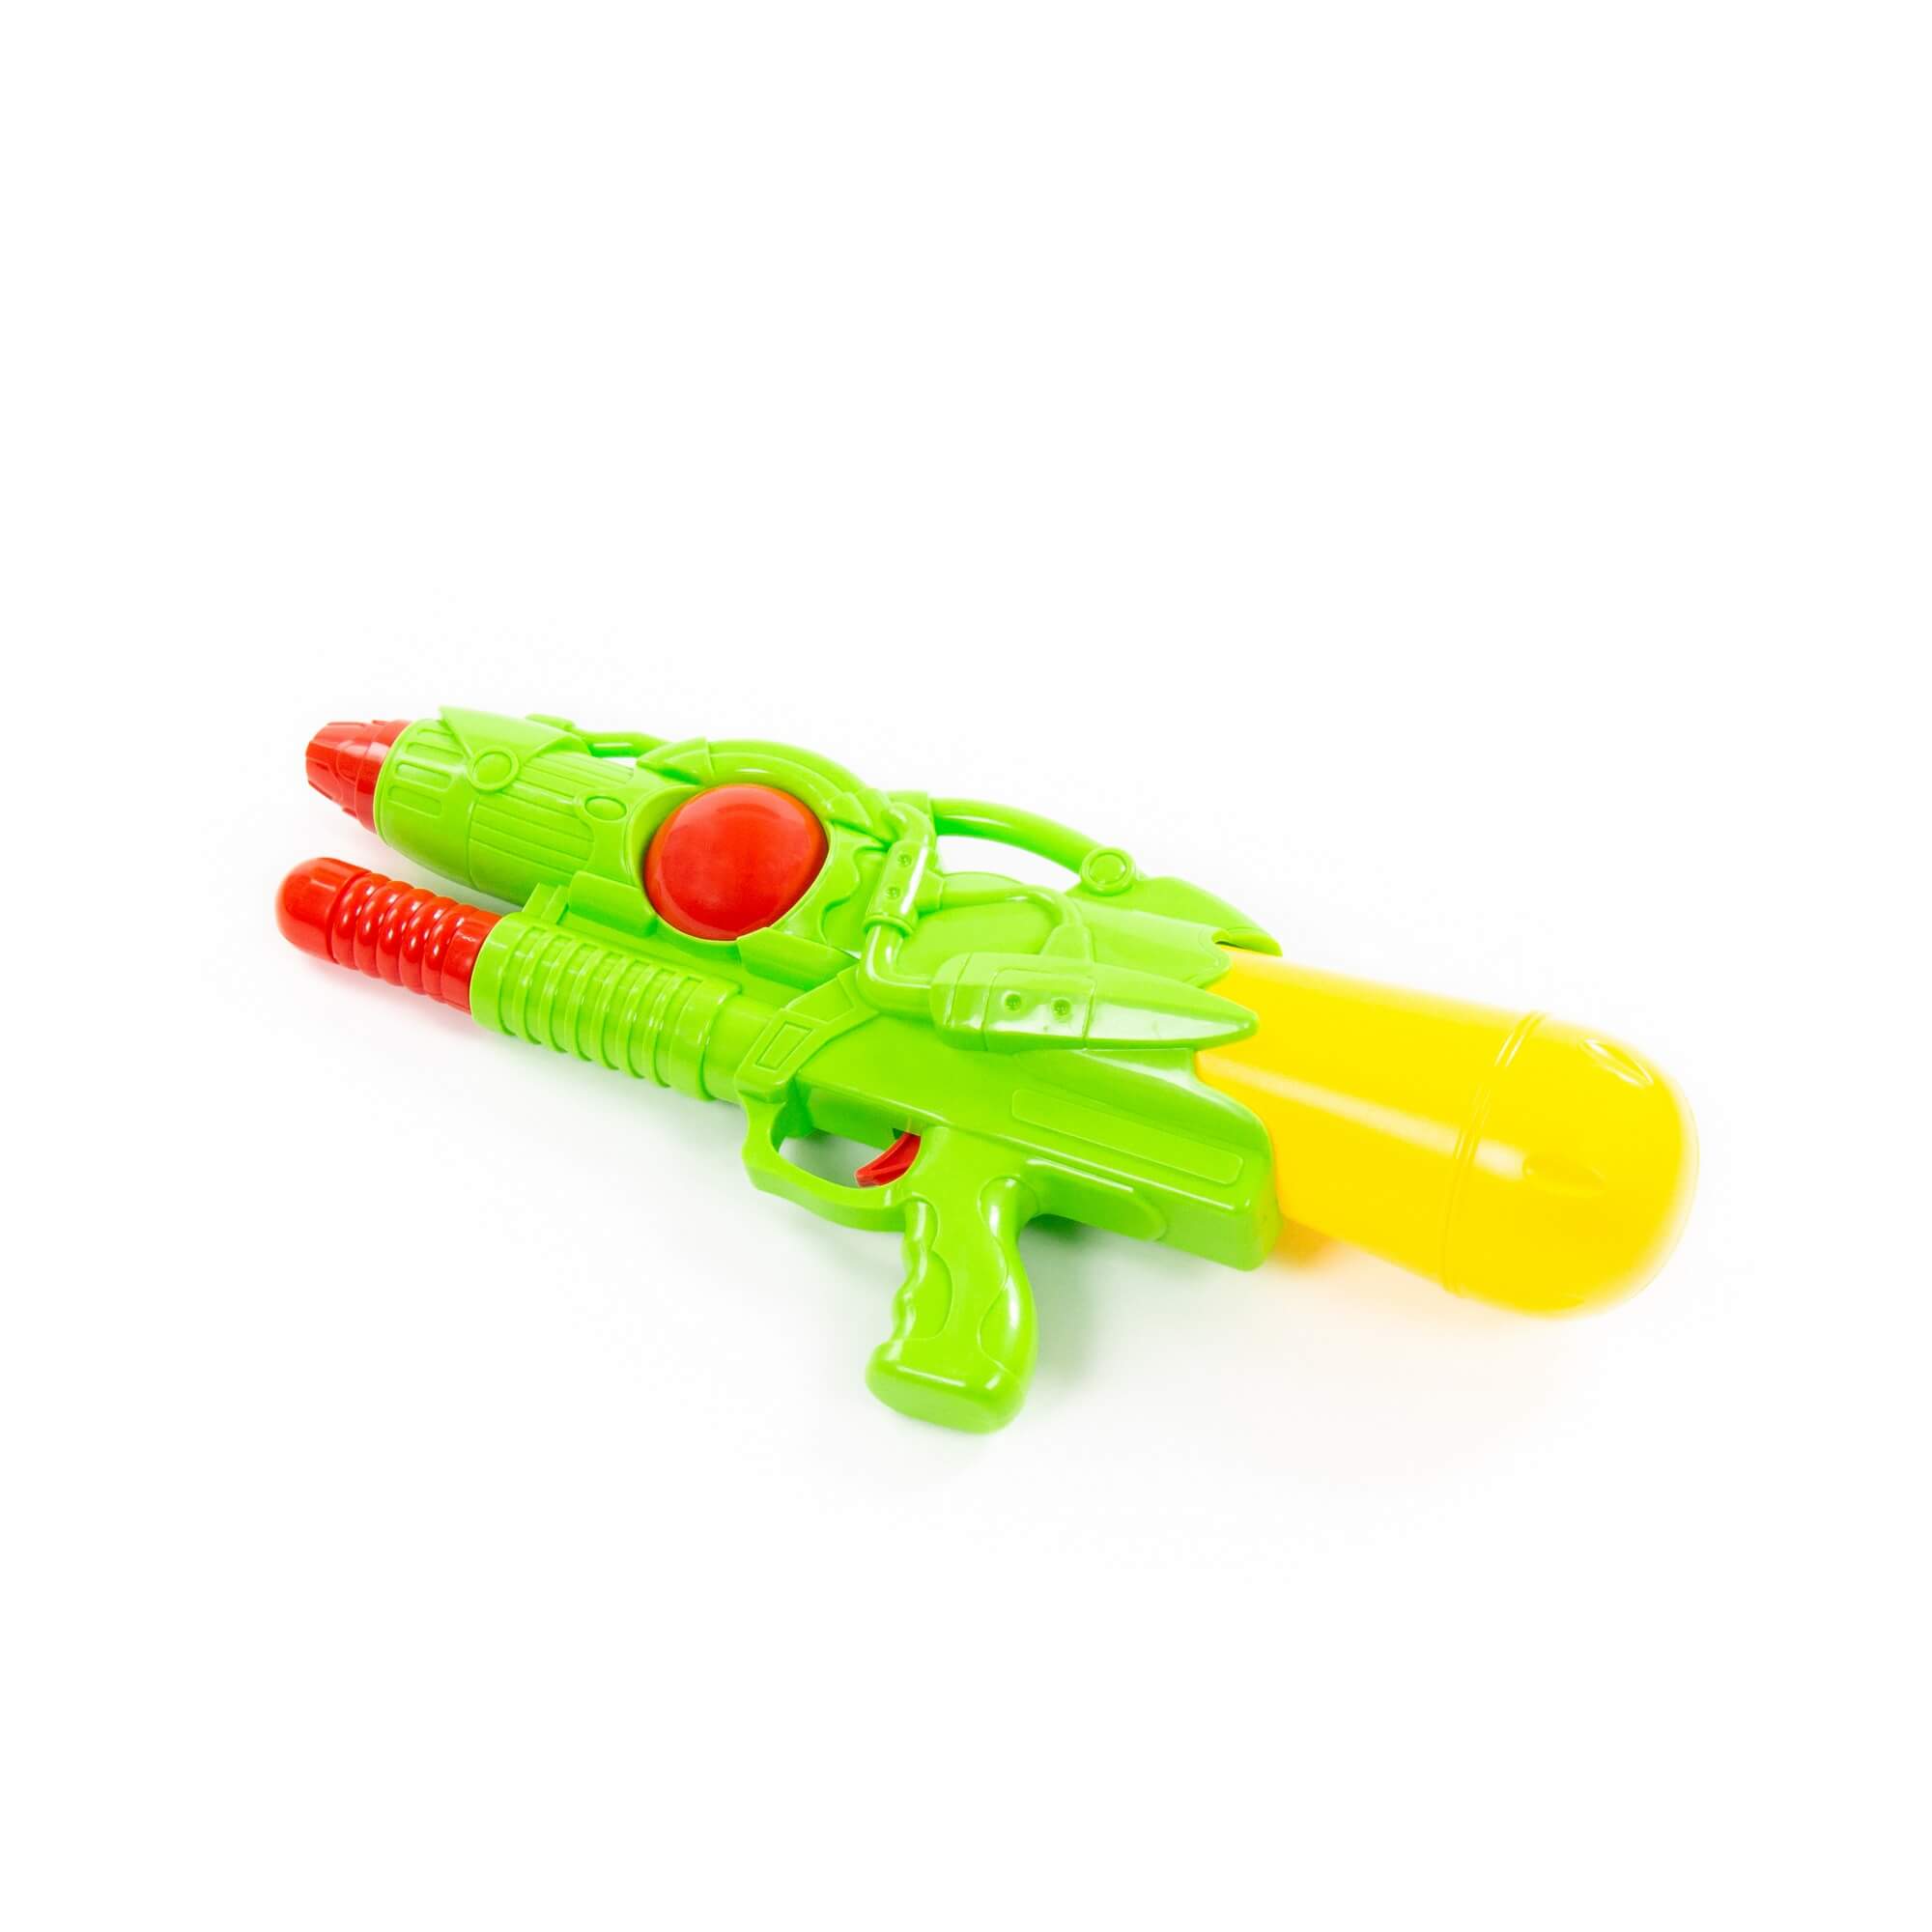 Водный пистолет игрушечный Полесье Аквадрайв №4 81520 плс водный пистолет аквадрайв 6 34 см в пакете